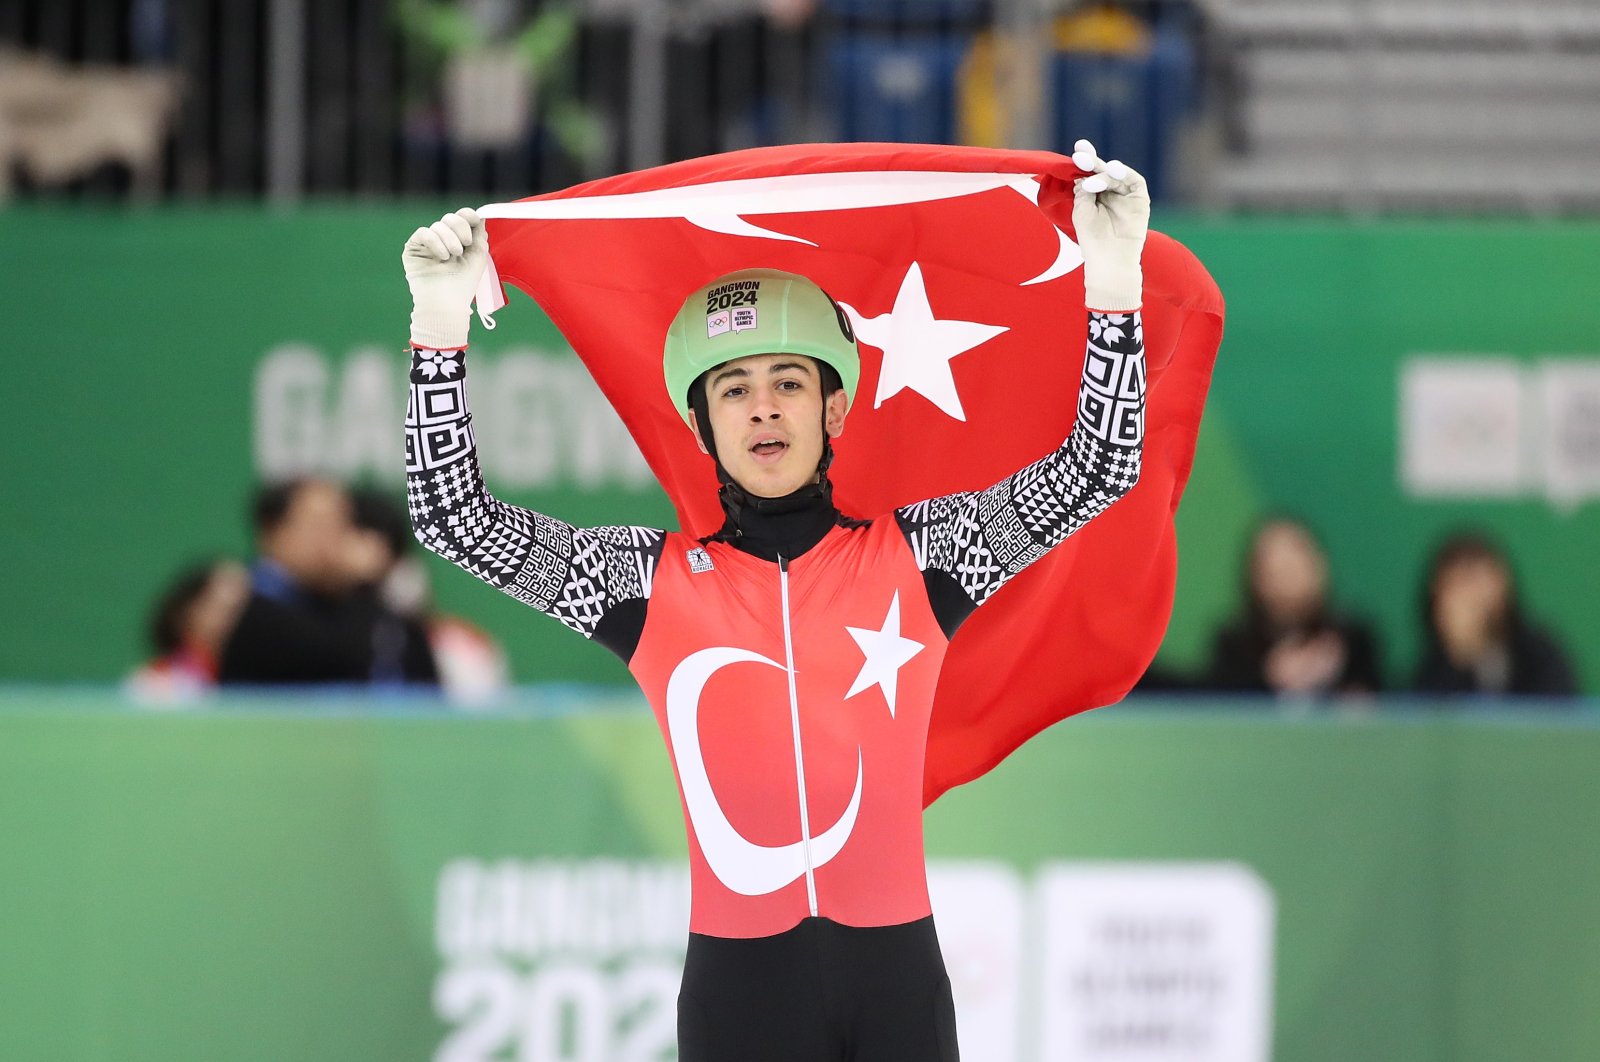 Türk patenci Bozdağ, Kış Gençlik Olimpiyat Oyunları'nda gümüş madalya kazandı